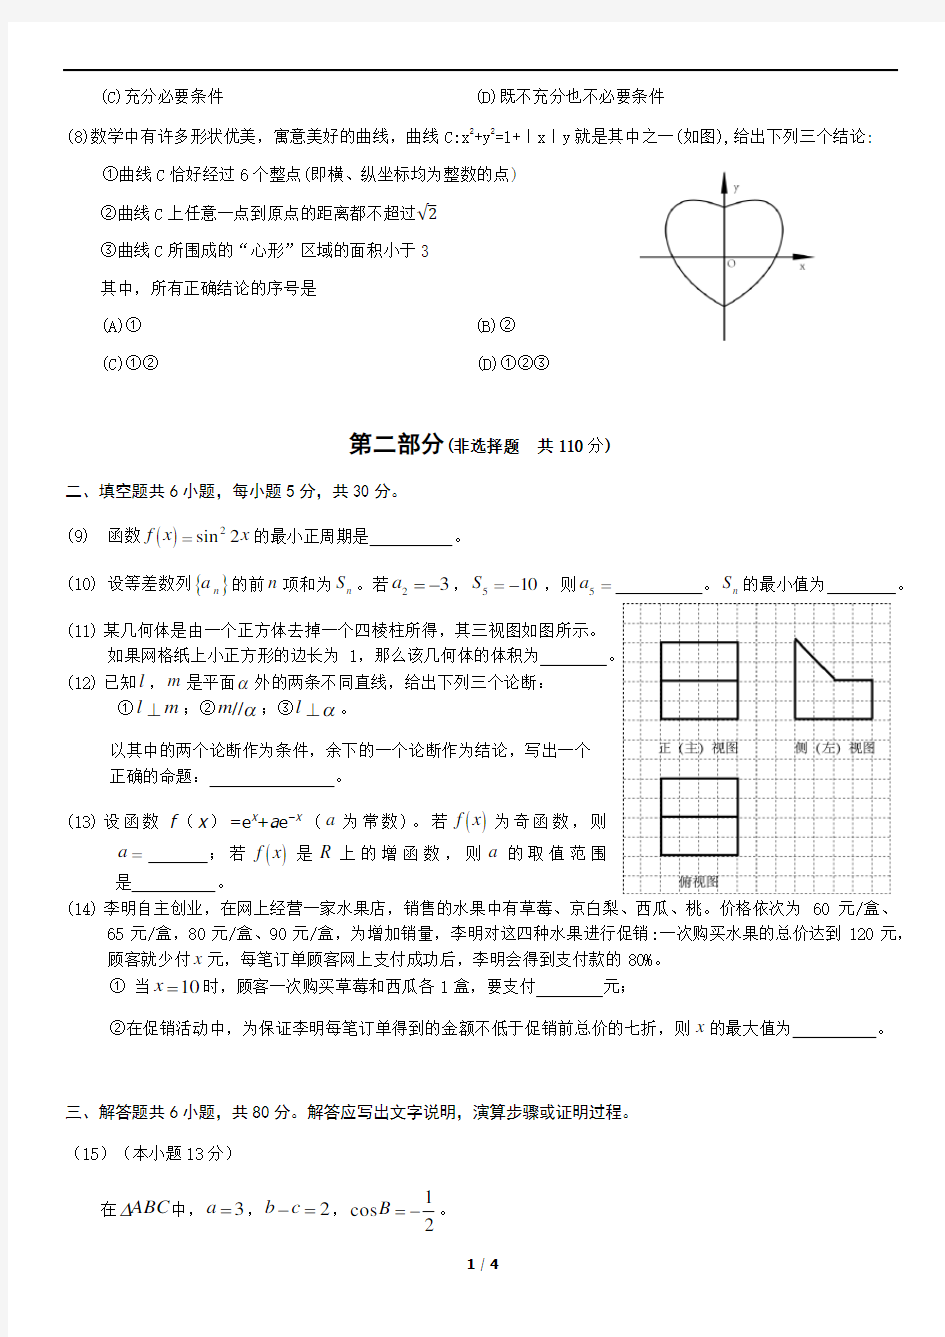 2019北京高考真题数学(理)